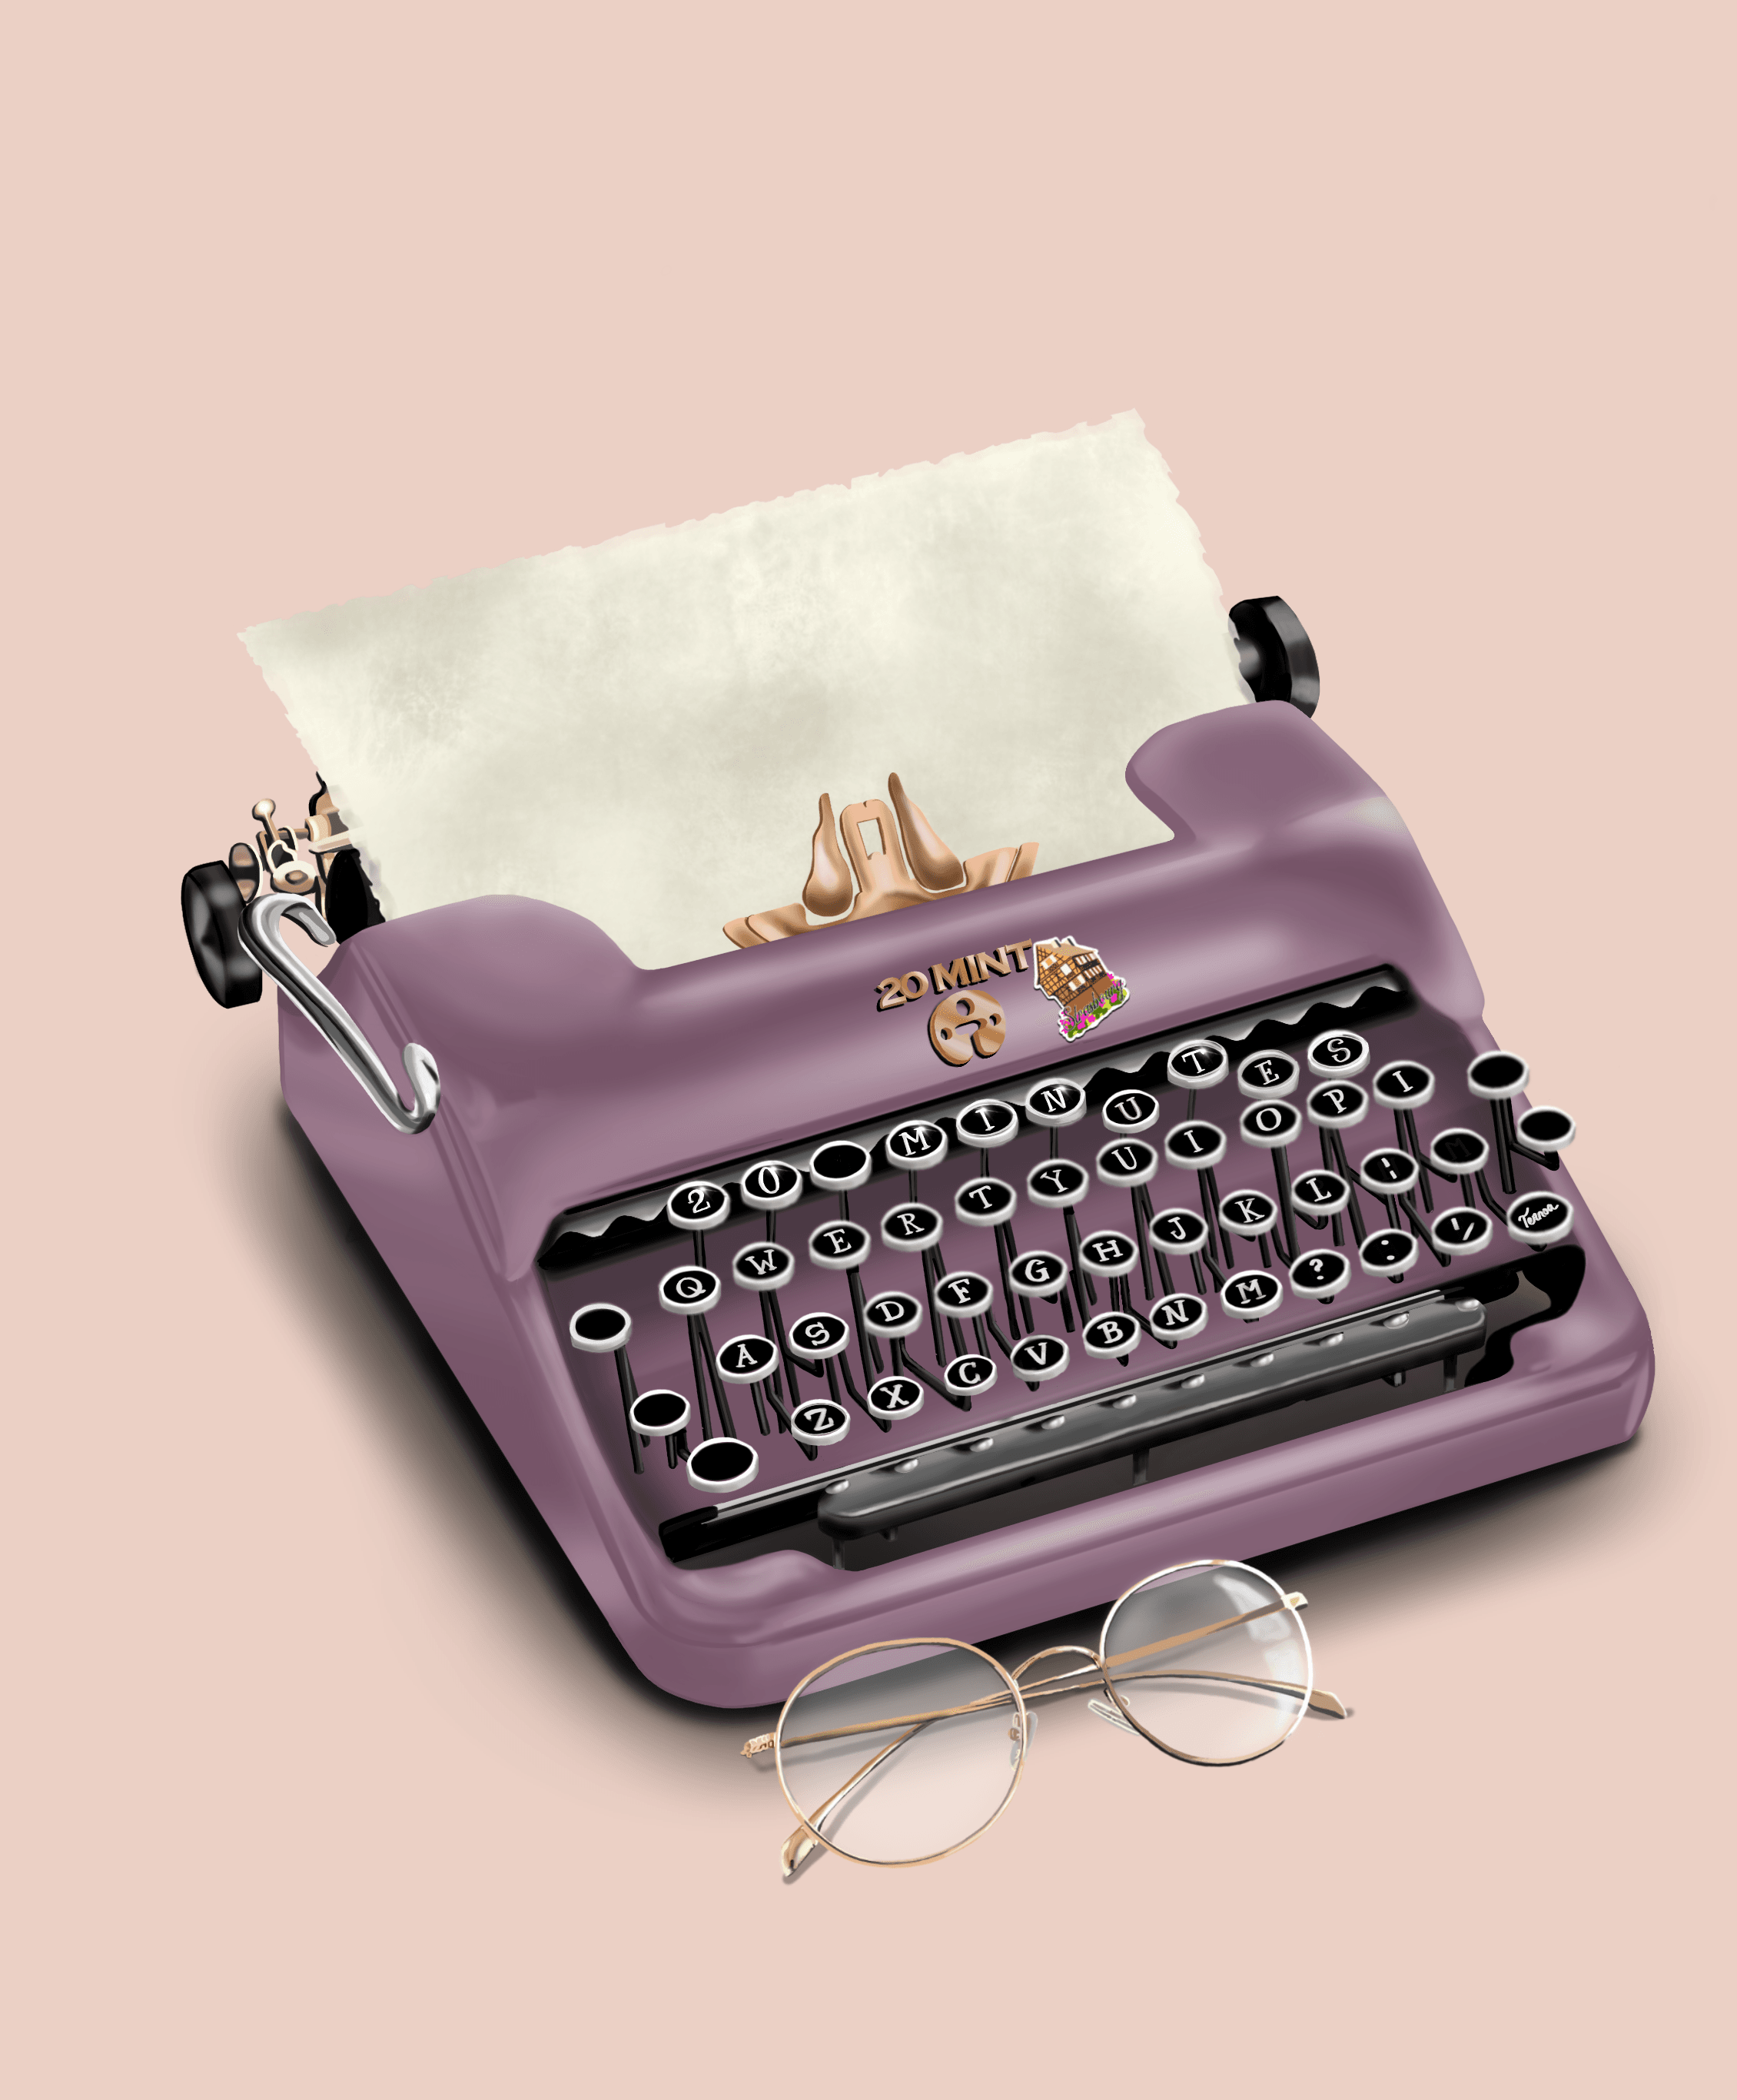 20 Mint Typewriter #263